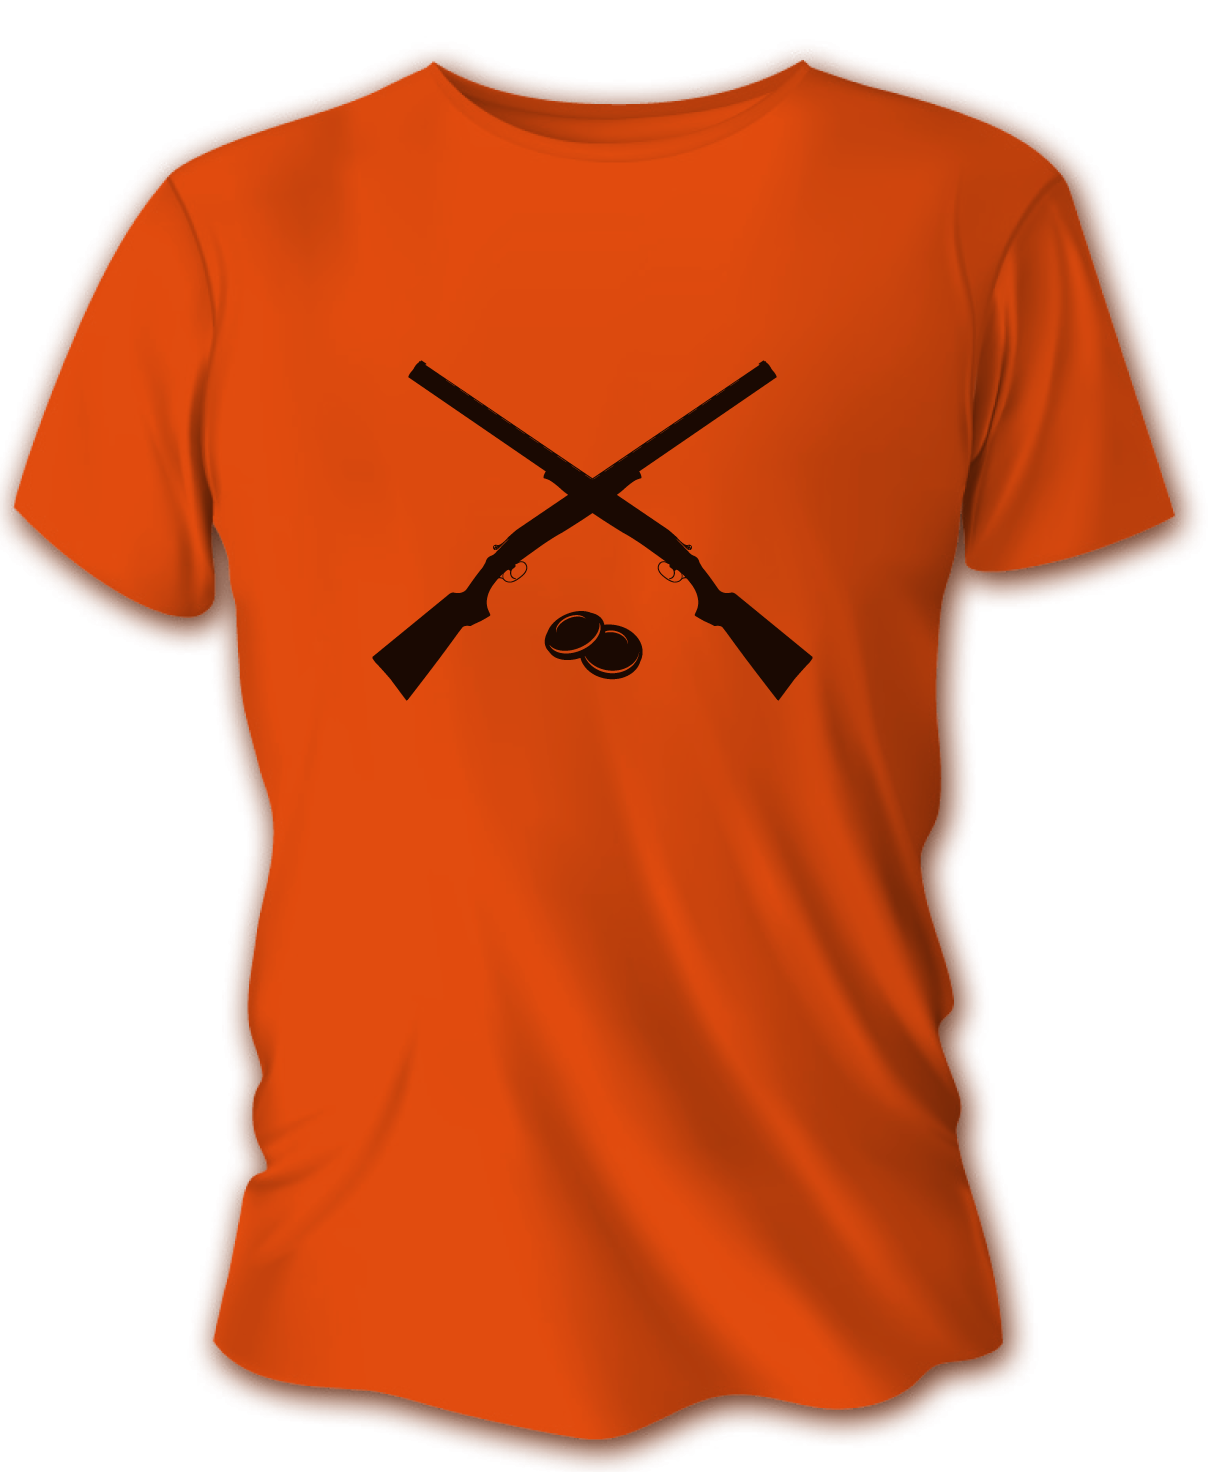 Pánske poľovnícke tričko TETRAO brokovnice - oranžové   2XL